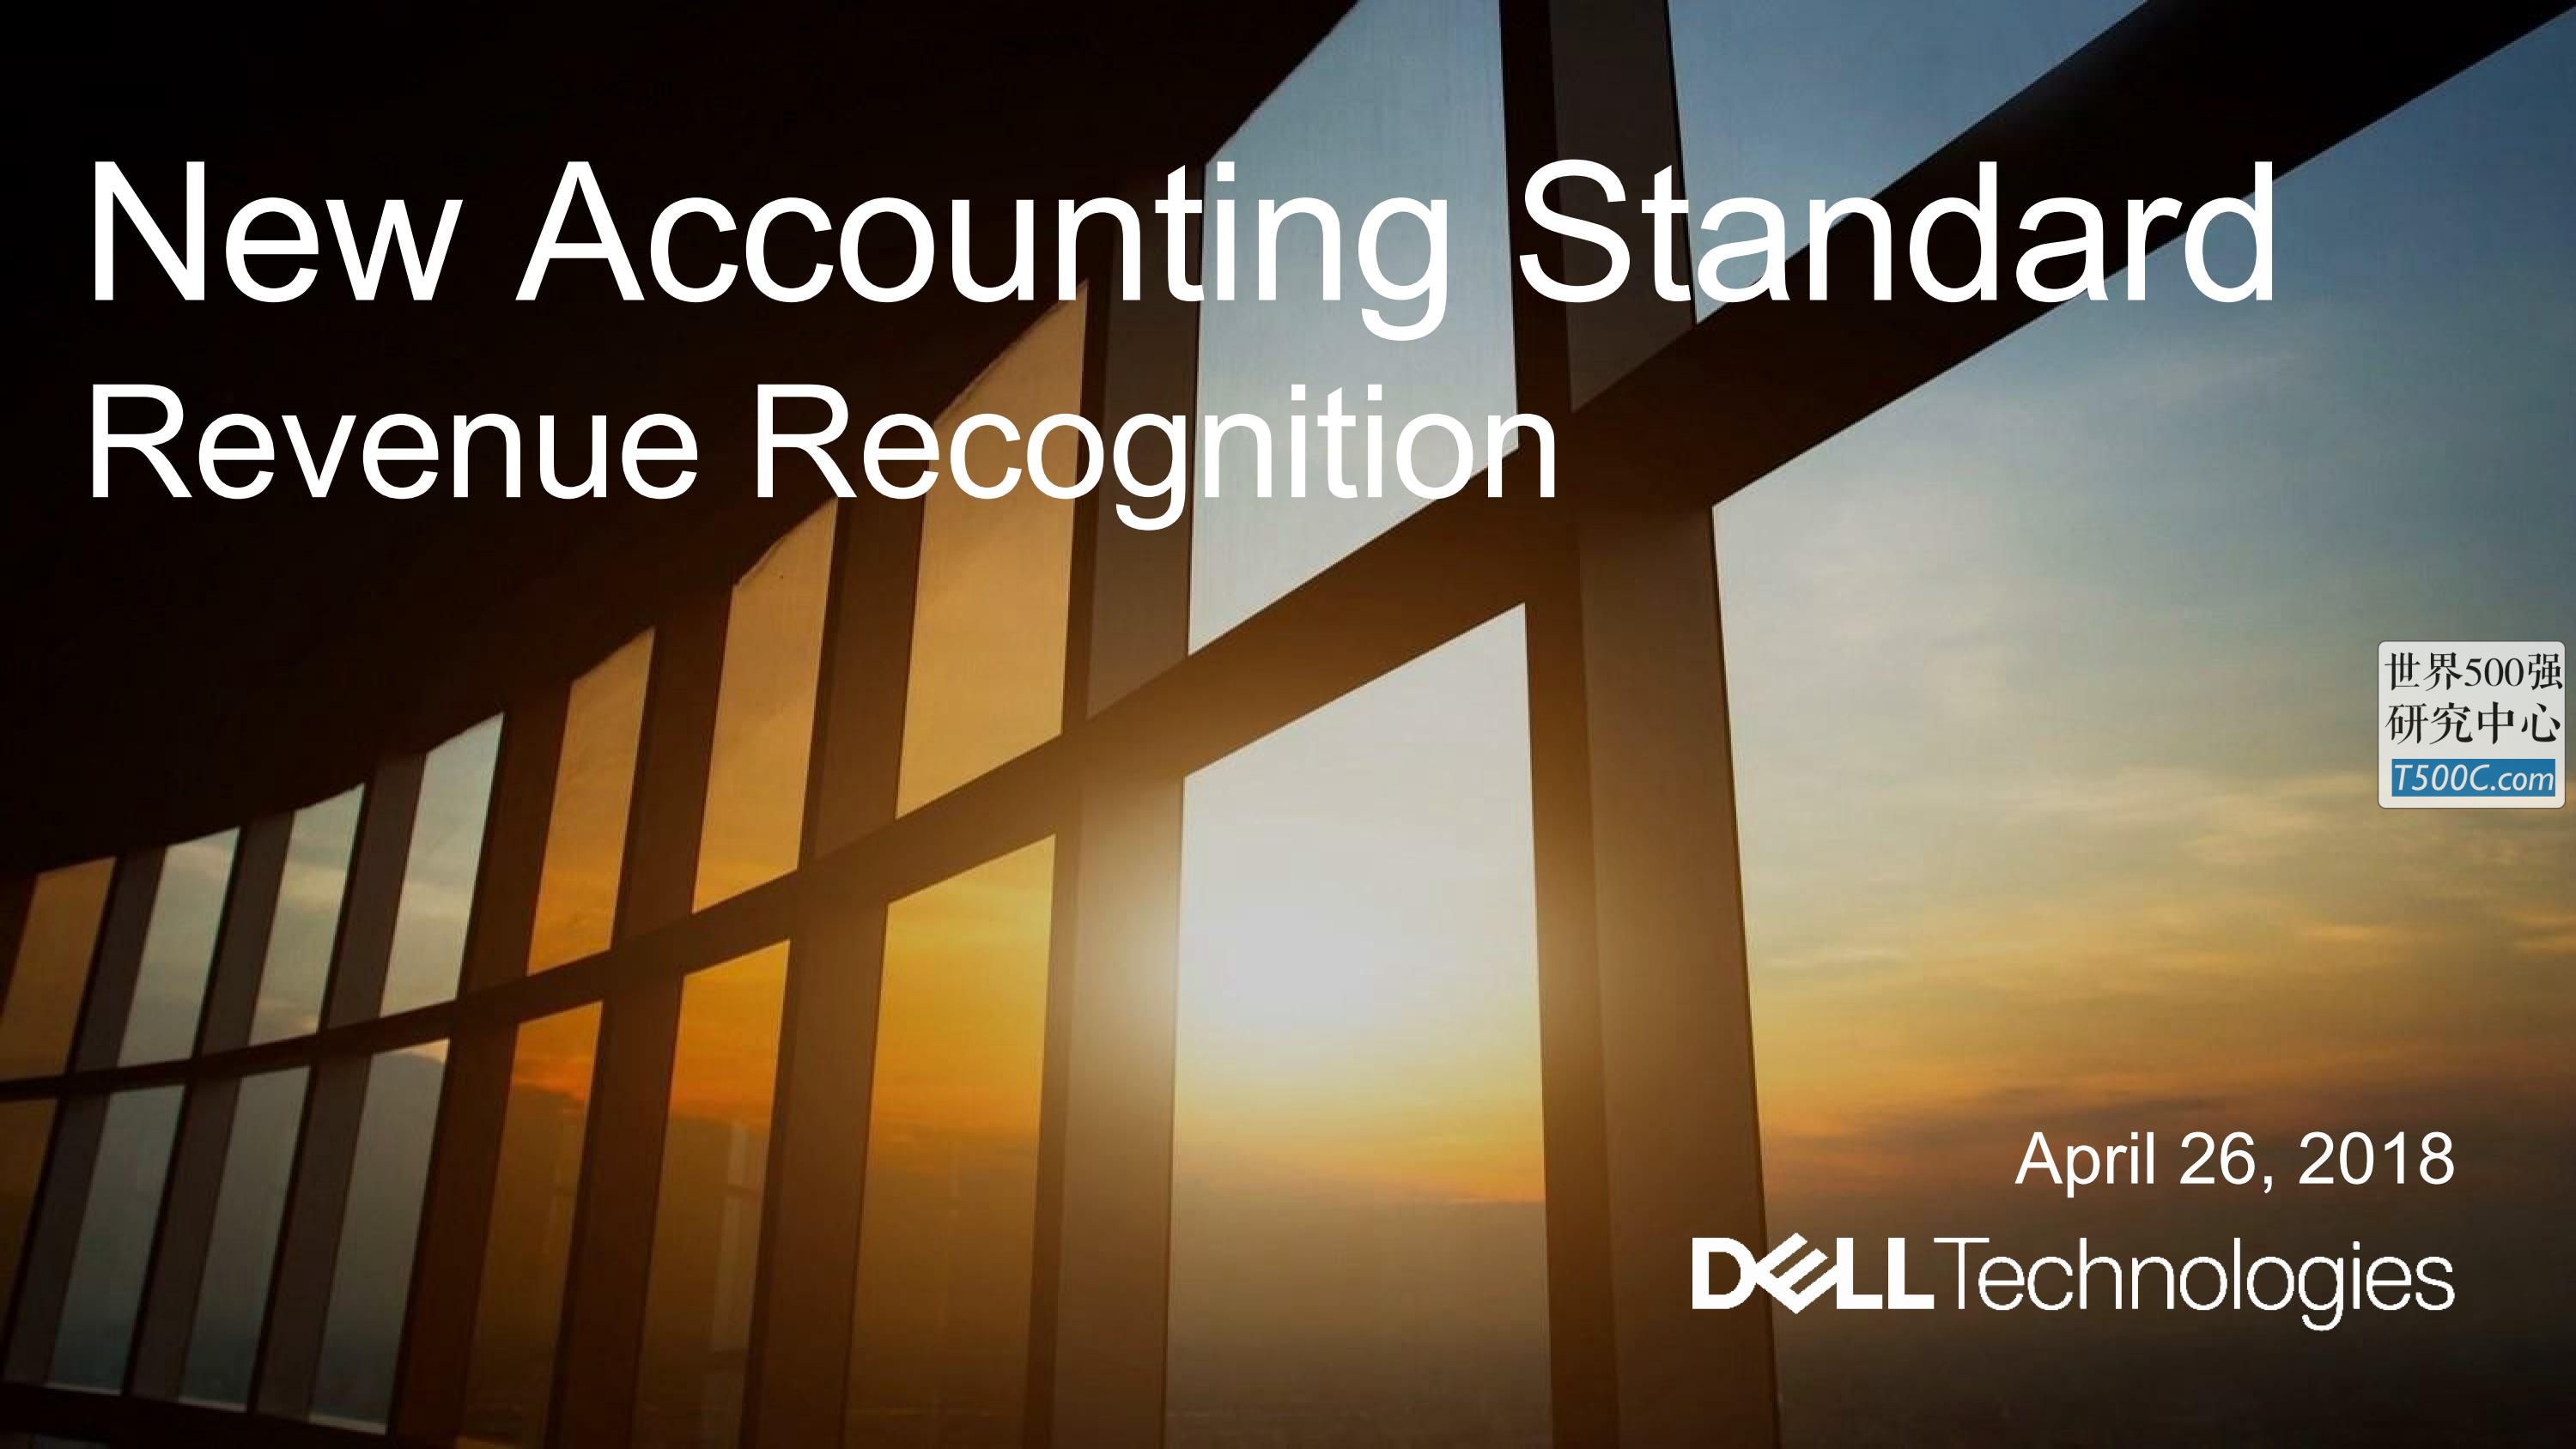 戴尔Dell_PPT样式_2018_T500C.com_Technologies New Accounting Standard Presentation.pdf